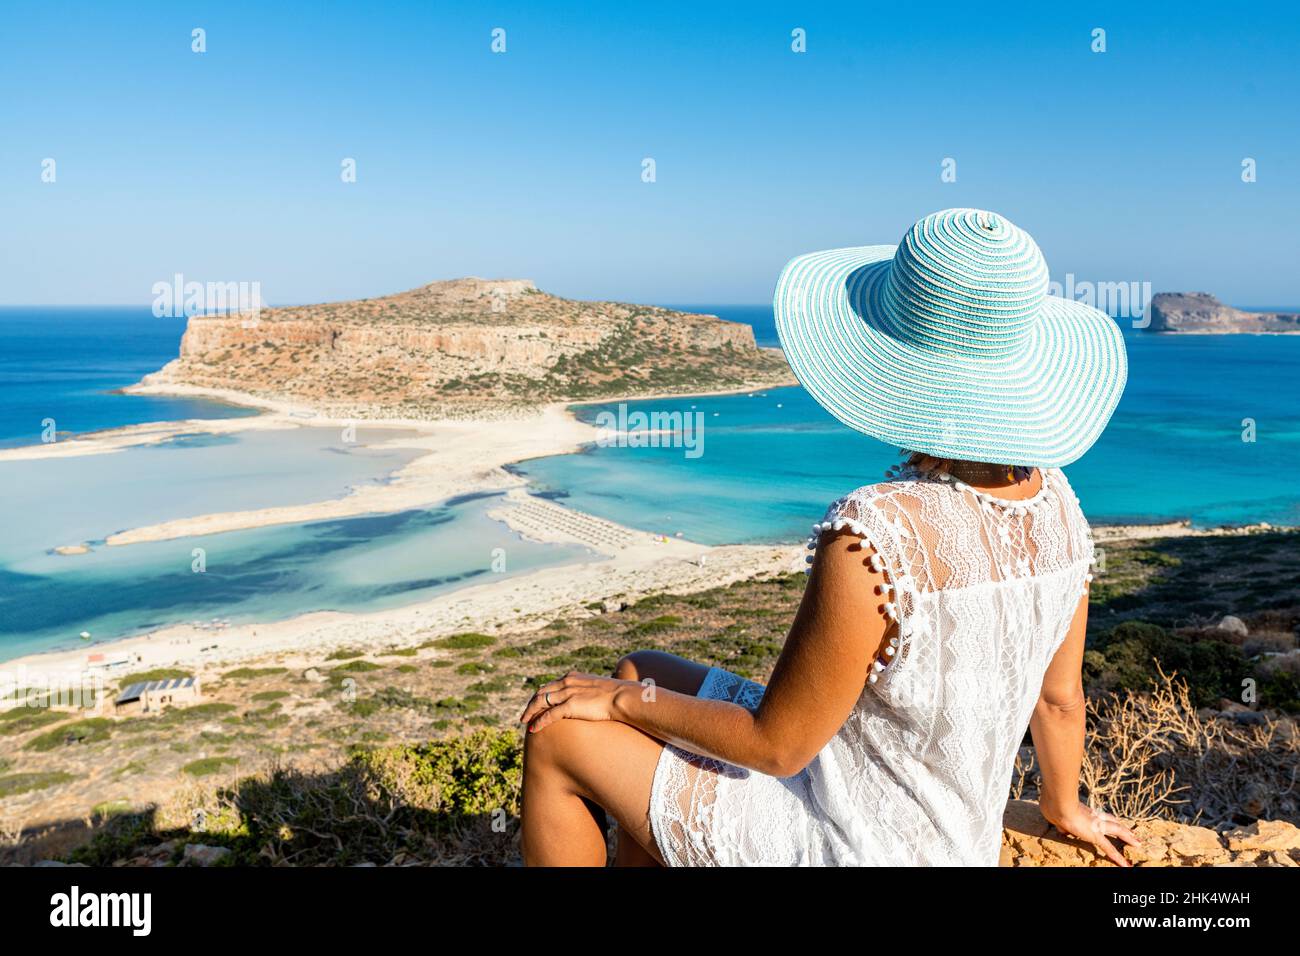 Retrato de mujer con sombrero admirando la idílica playa y laguna situada en lo alto de la colina, Balos, Creta, Islas griegas, Grecia, Europa Foto de stock